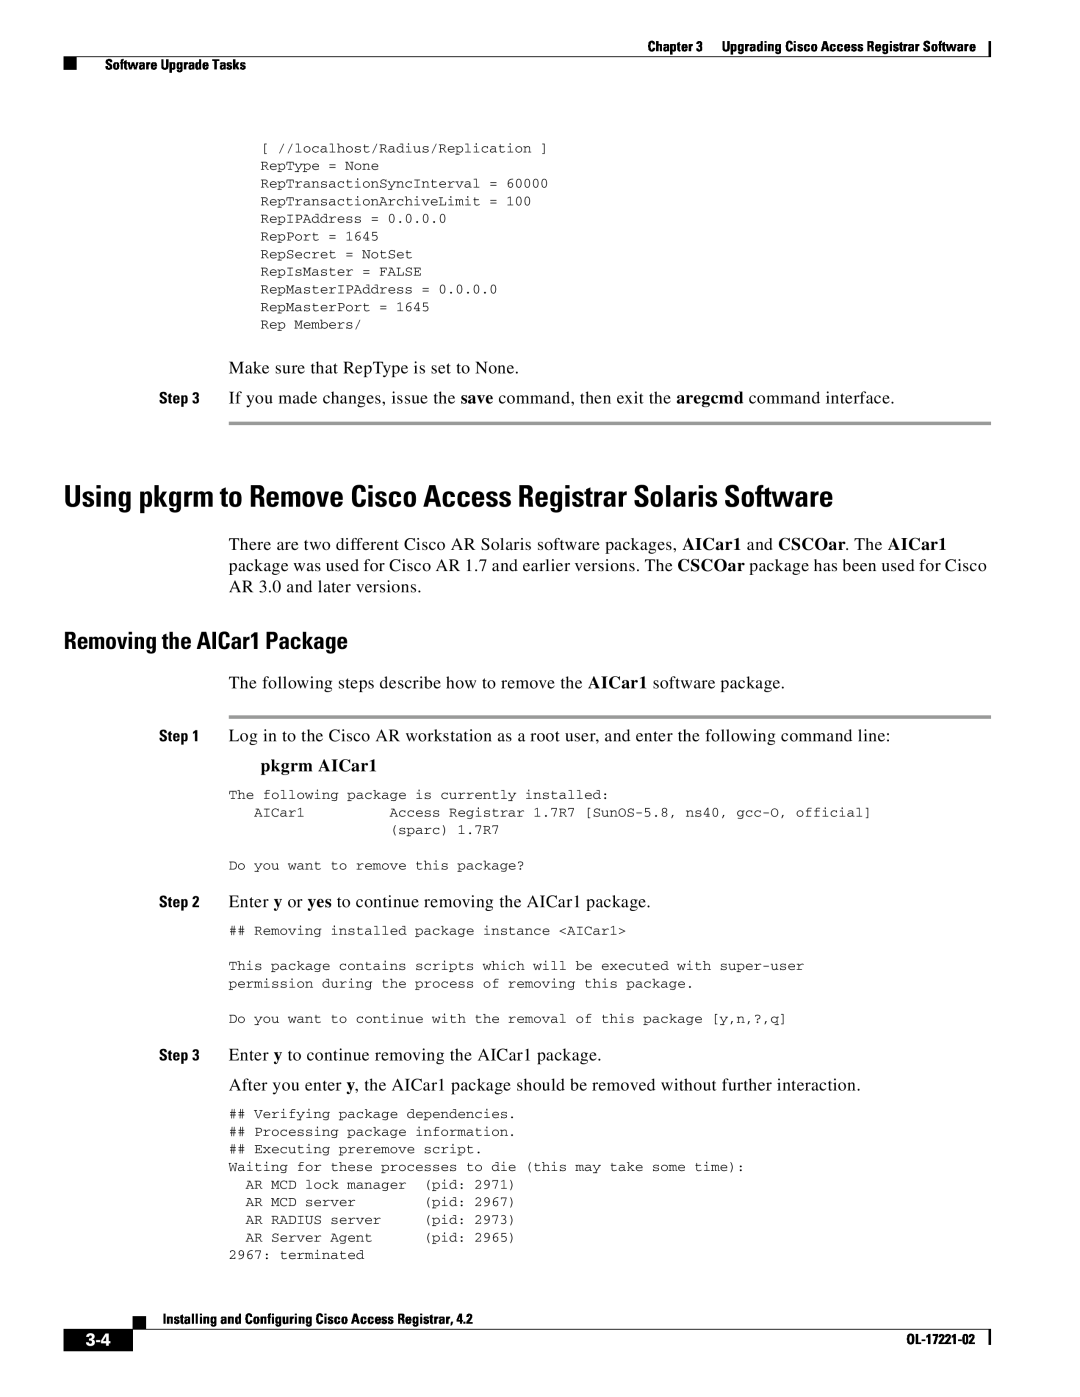 Cisco Systems 4.2 Using pkgrm to Remove Cisco Access Registrar Solaris Software, Removing the AICar1 Package, pkgrm AICar1 